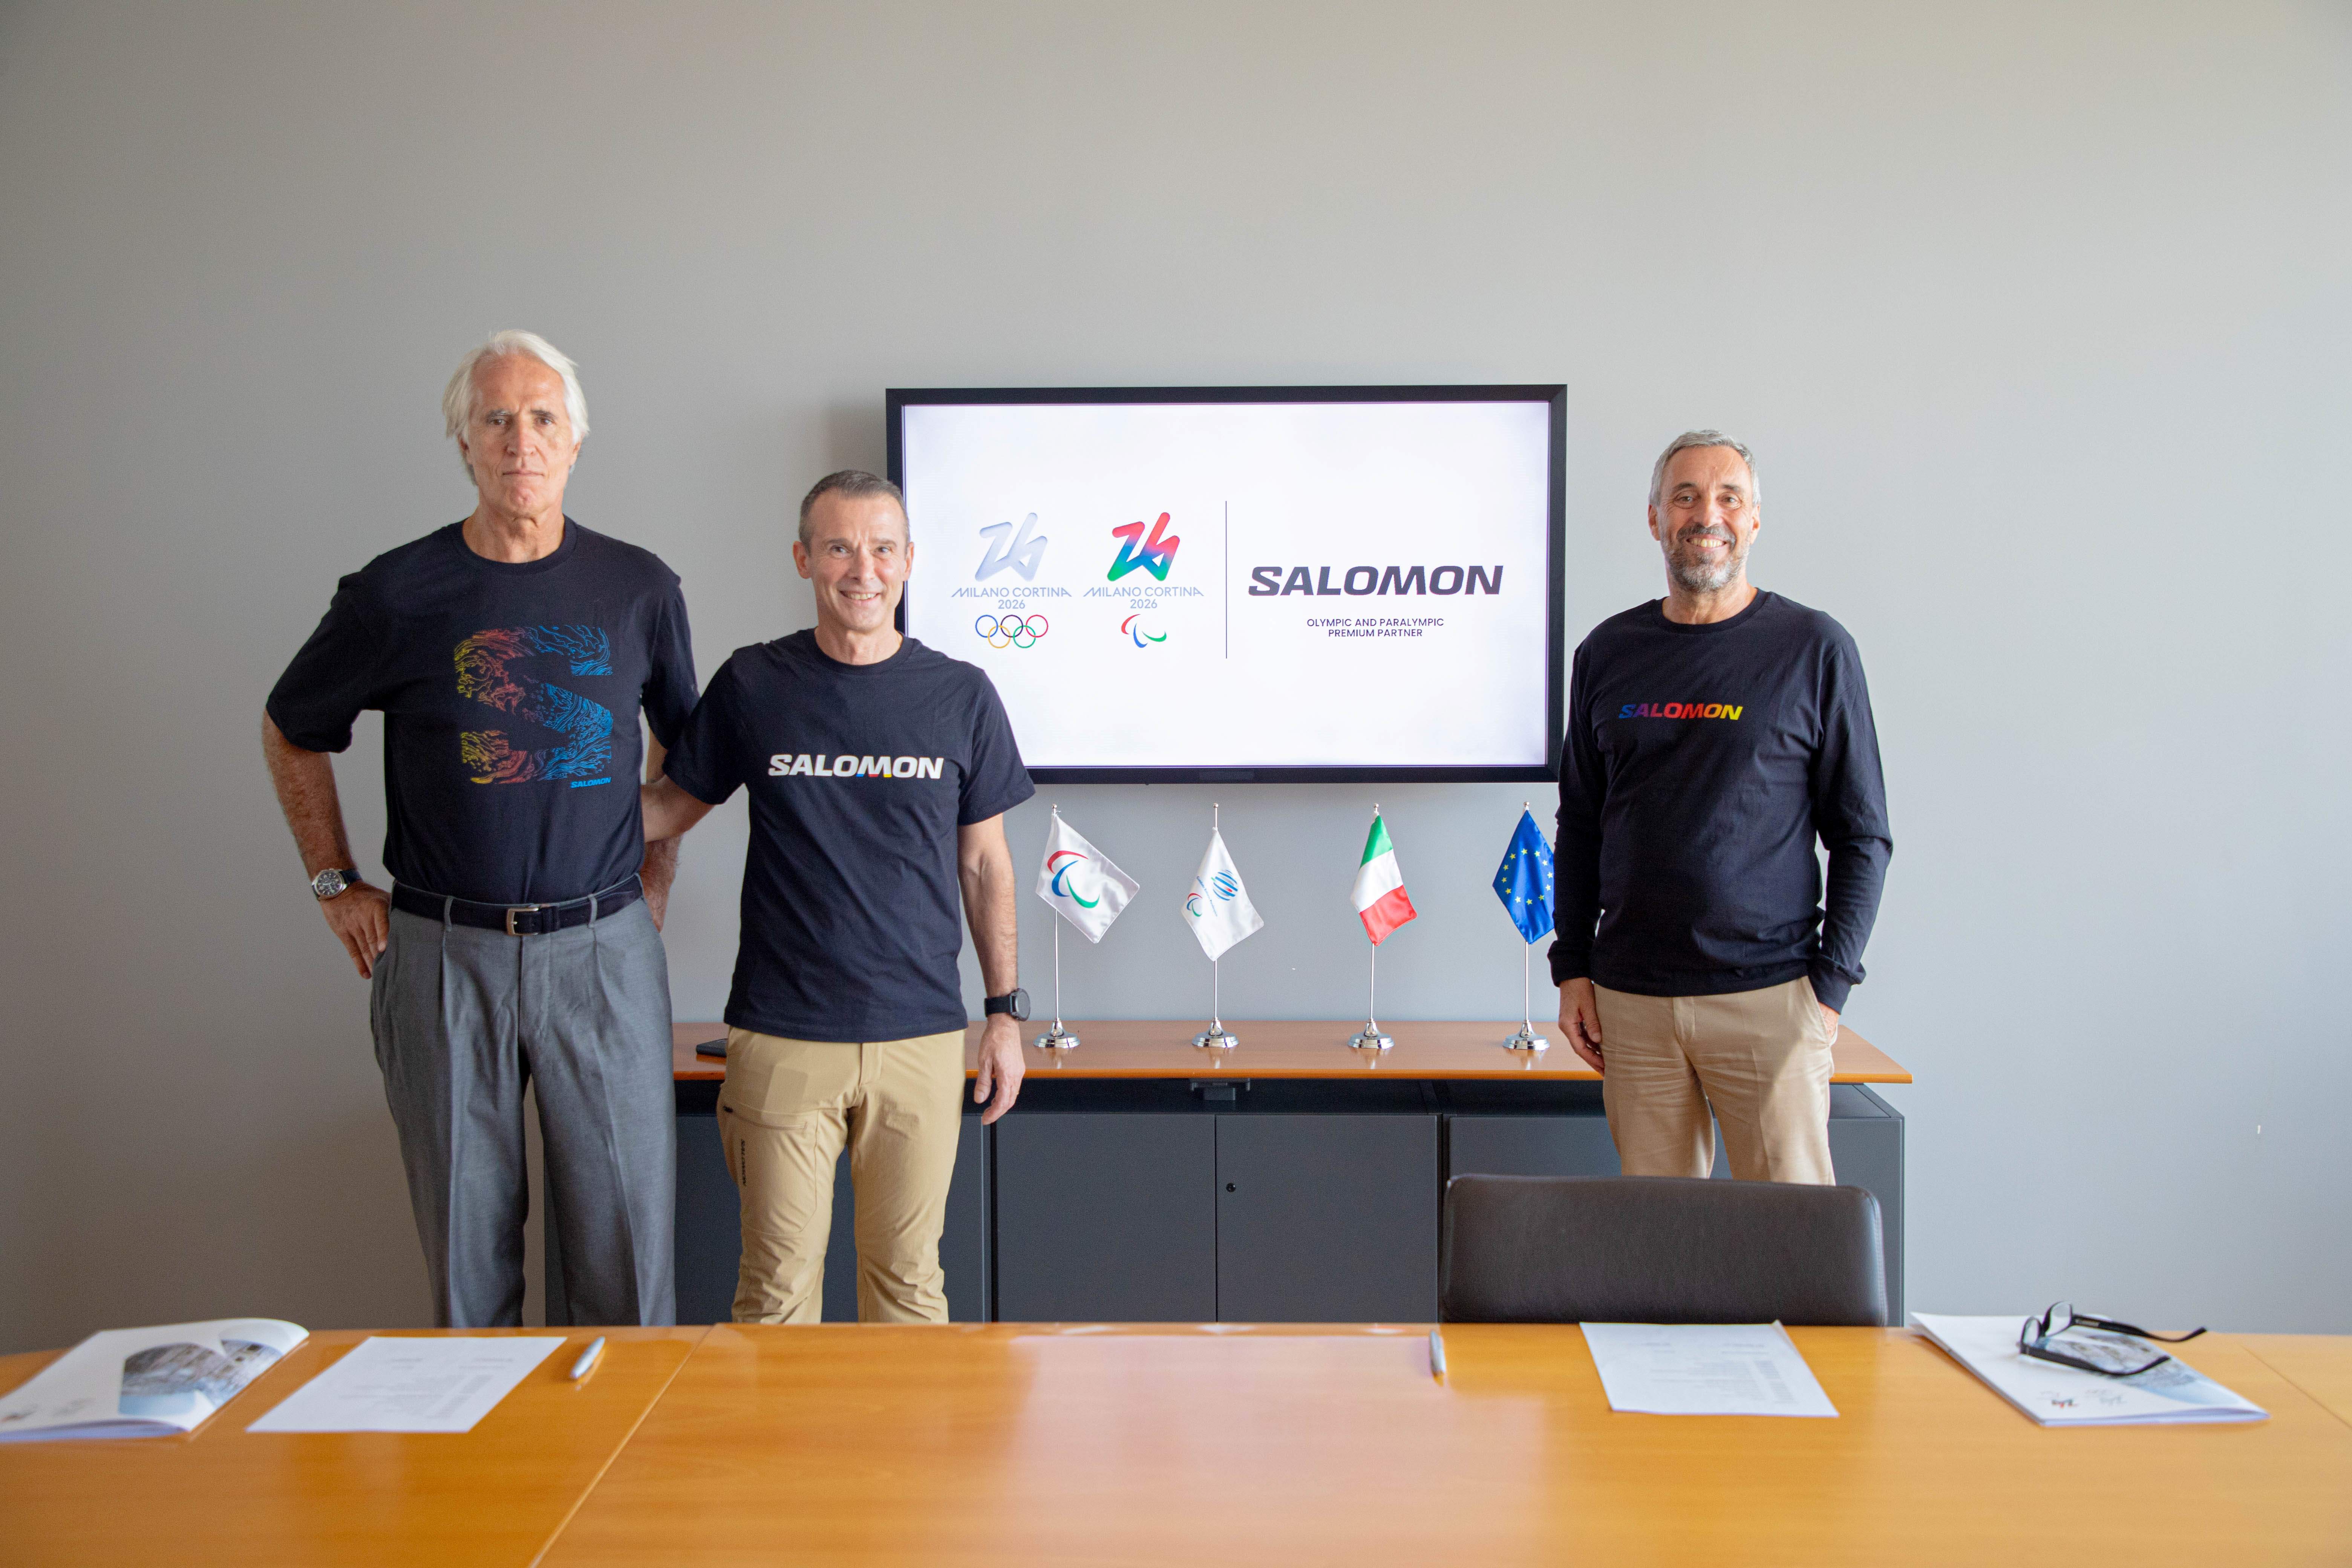 Photo by Andrea Varnier, CEO of Milano Cortina 2026, Giovanni Malagò, CONI President and Franco Fogliato, President and General Manager of Salomon